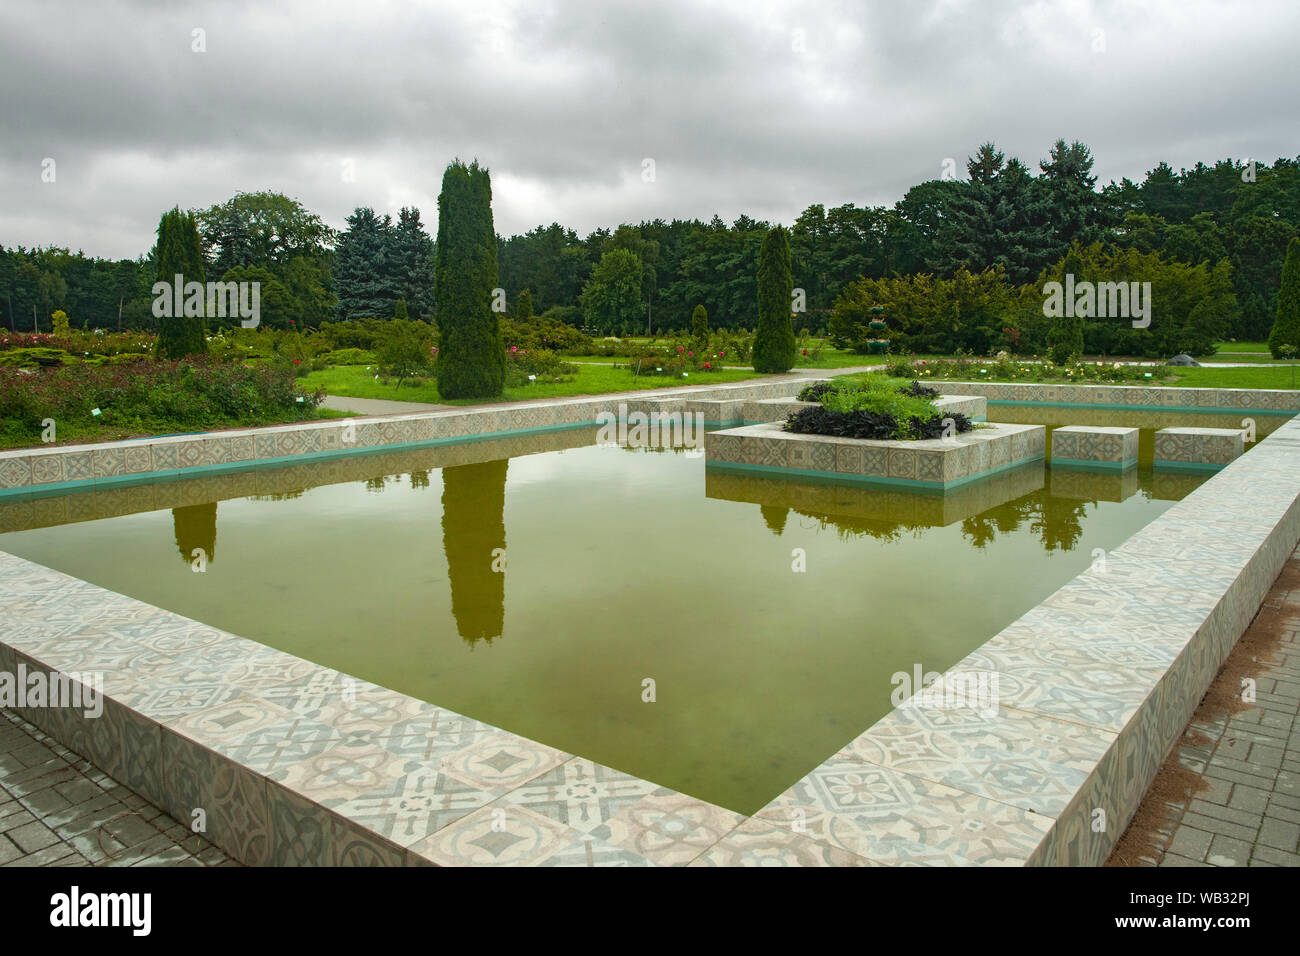 The Minsk Botanical Gardens in Minsk, Belarus. Stock Photo